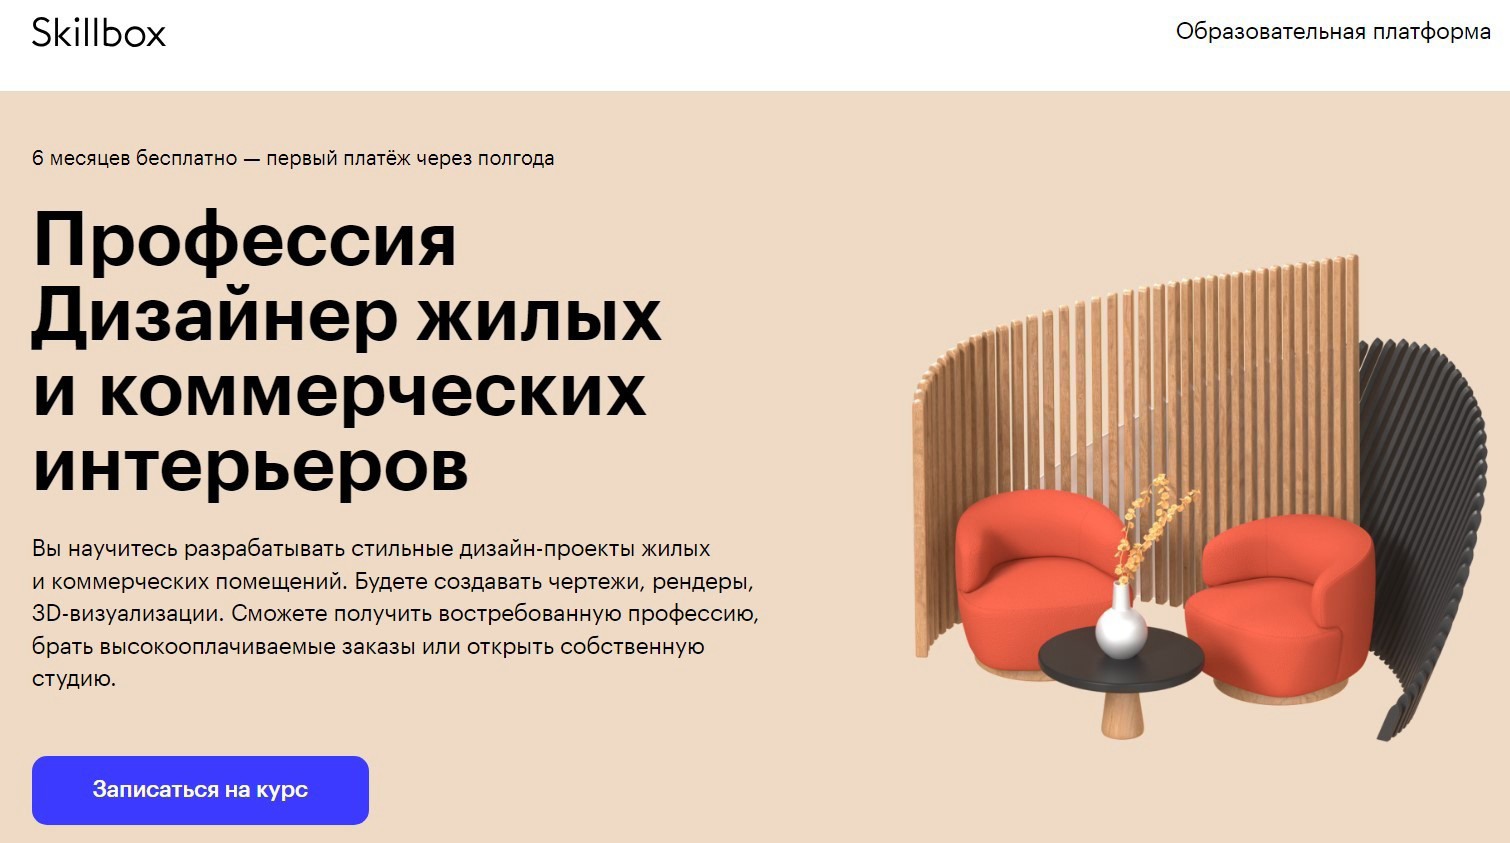 "Профессия Дизайнер жилых и коммерческих интерьеров" от Skillbox